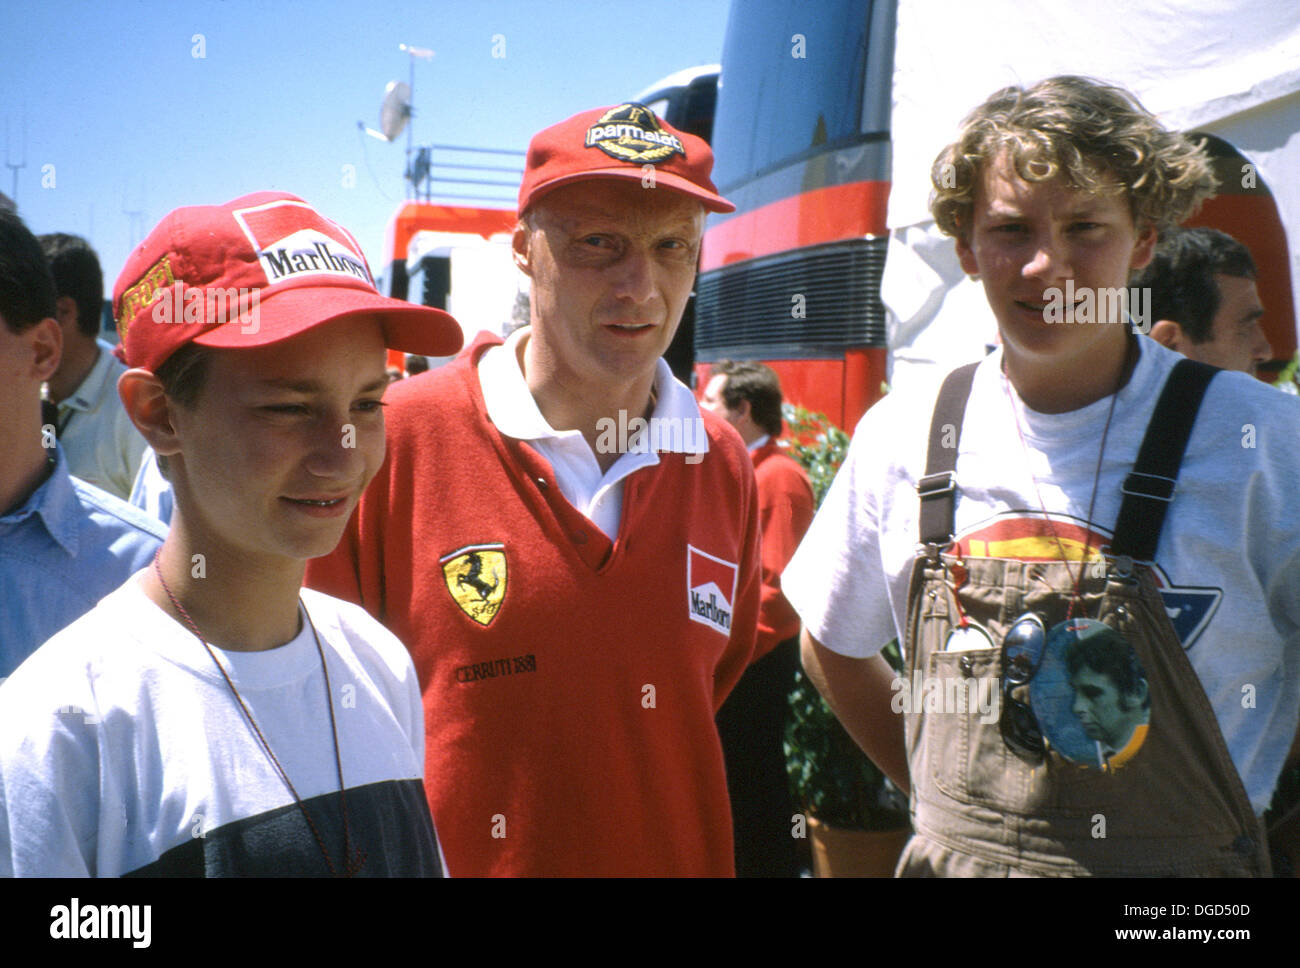 Niki Lauda, pilote automobile autrichien qui a remporté le Championnat du Monde de Formule 1 3 fois en 1975, 1977 et 1984. Avec ses fils en 1995. Banque D'Images